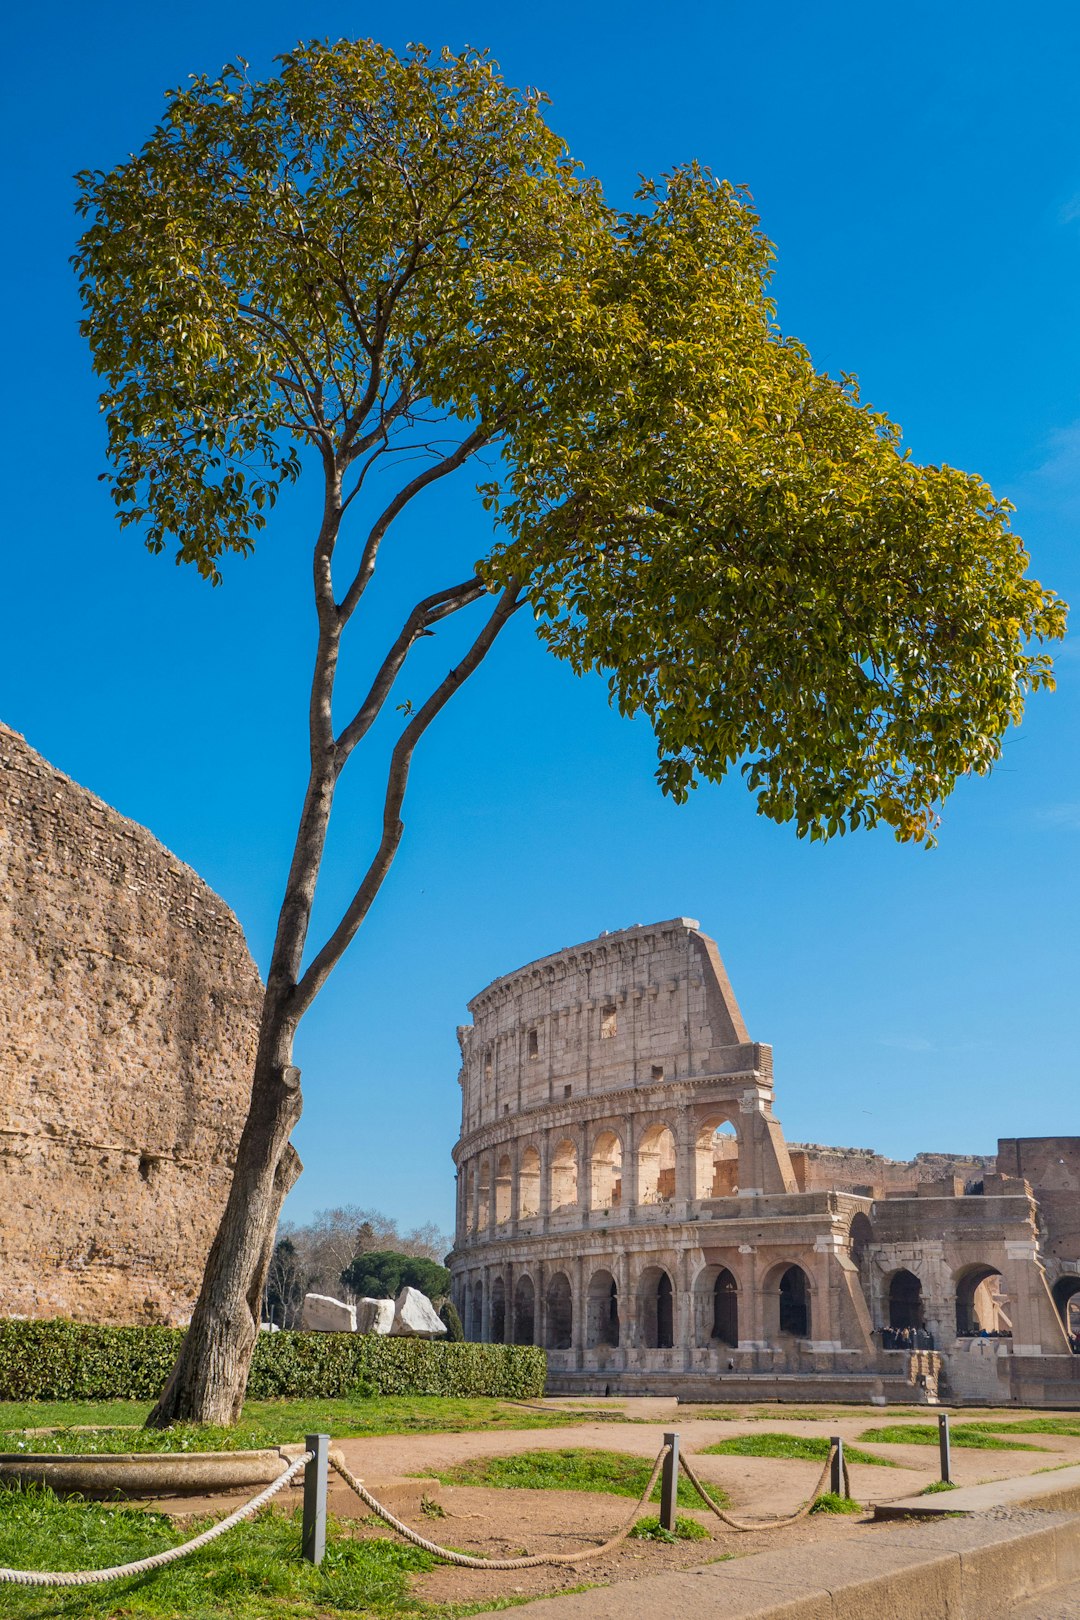 Landmark photo spot Colosseum Piazza di Trevi